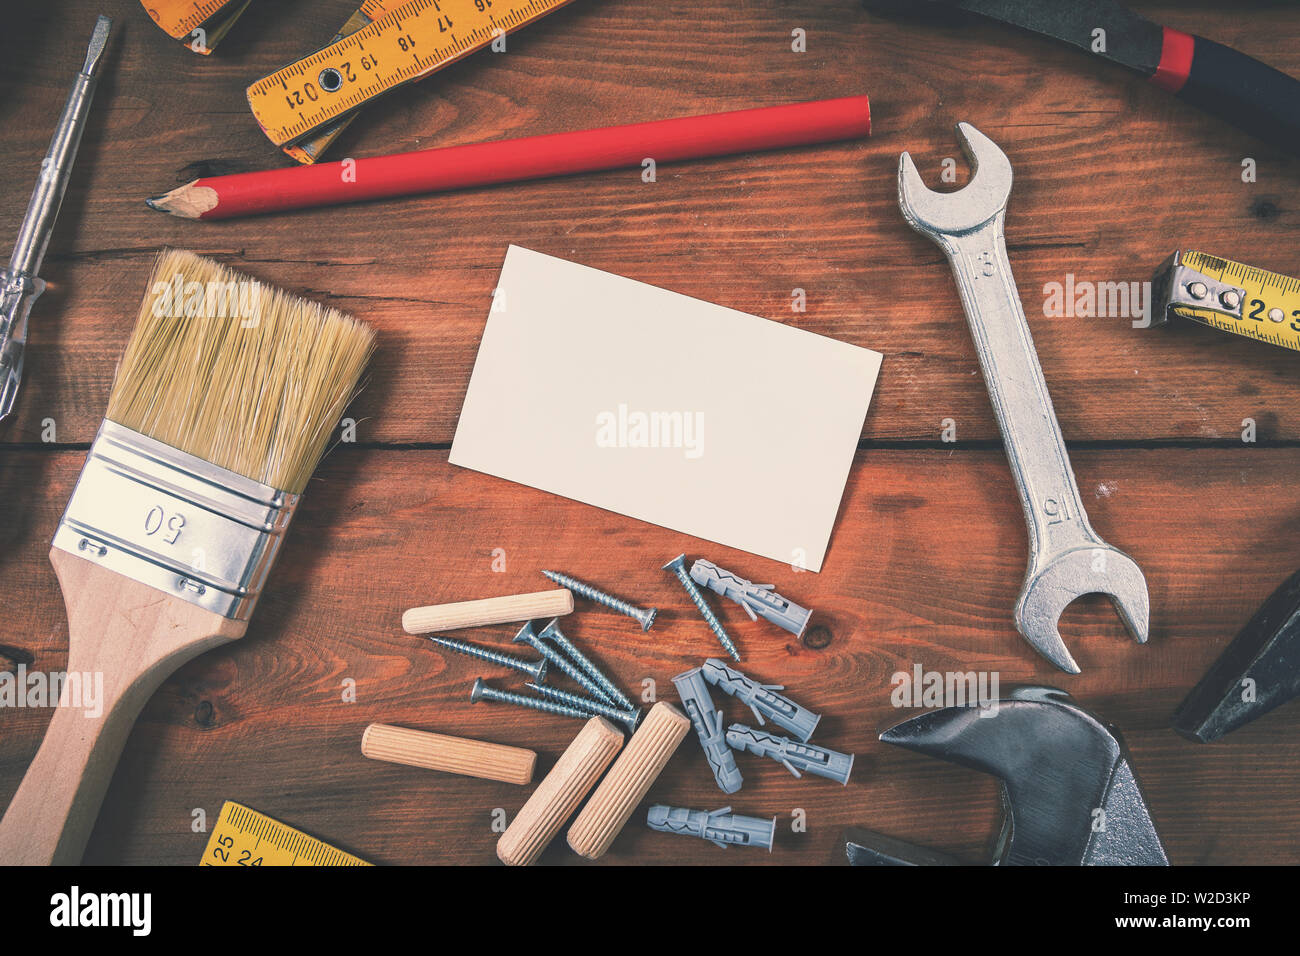 Handyman services accueil réparation - blank business card avec construction tools sur fond de bois Banque D'Images